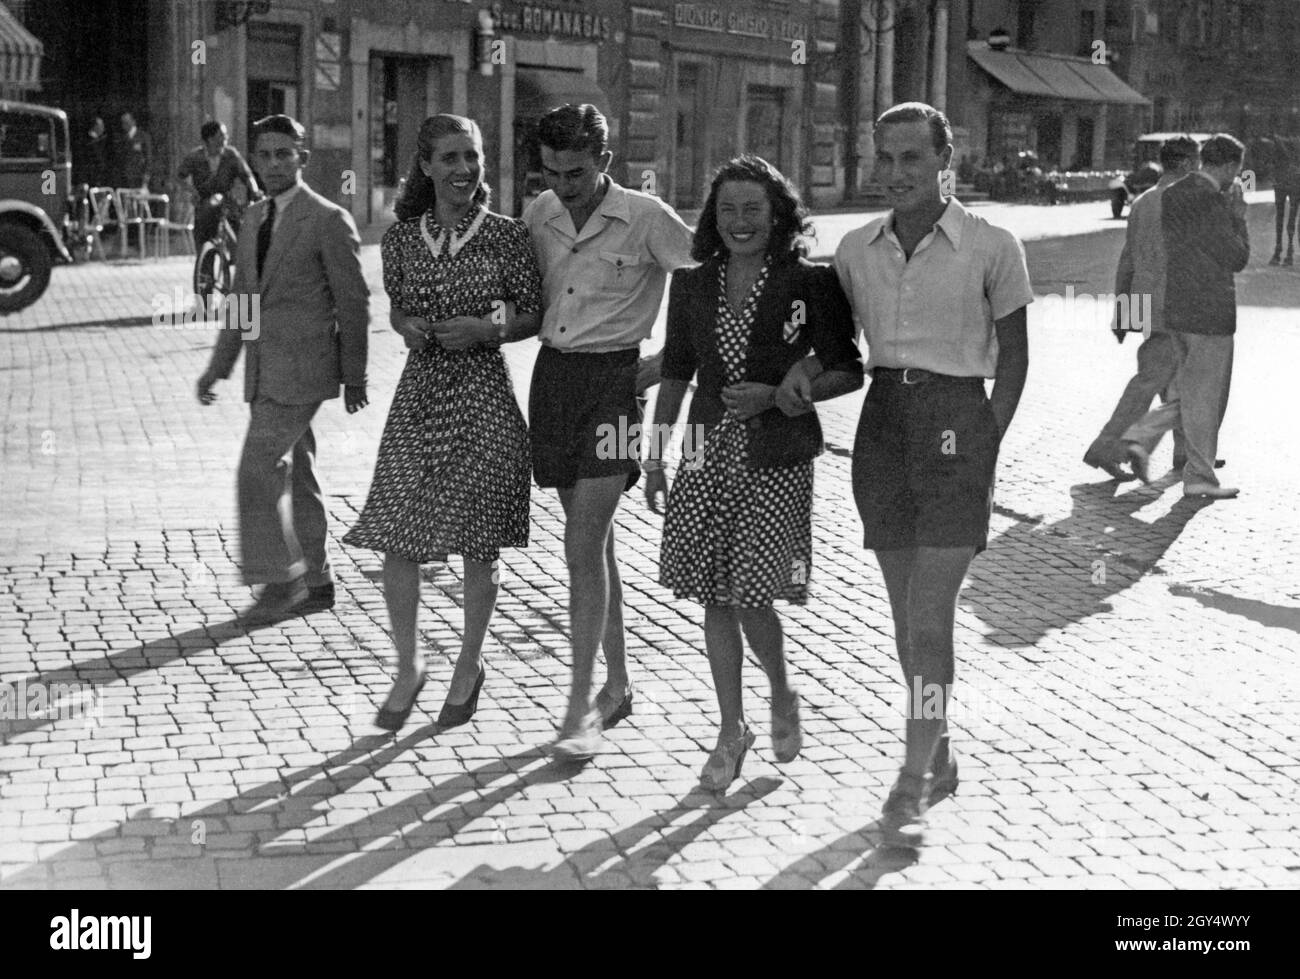 Nel 1940 fu data una nuova moda ai giovani italiani: Non si indossavano più  abiti non essenziali come le cravatte. Si indossavano solo calzini corti e  i ragazzi indossavano pantaloncini, come si